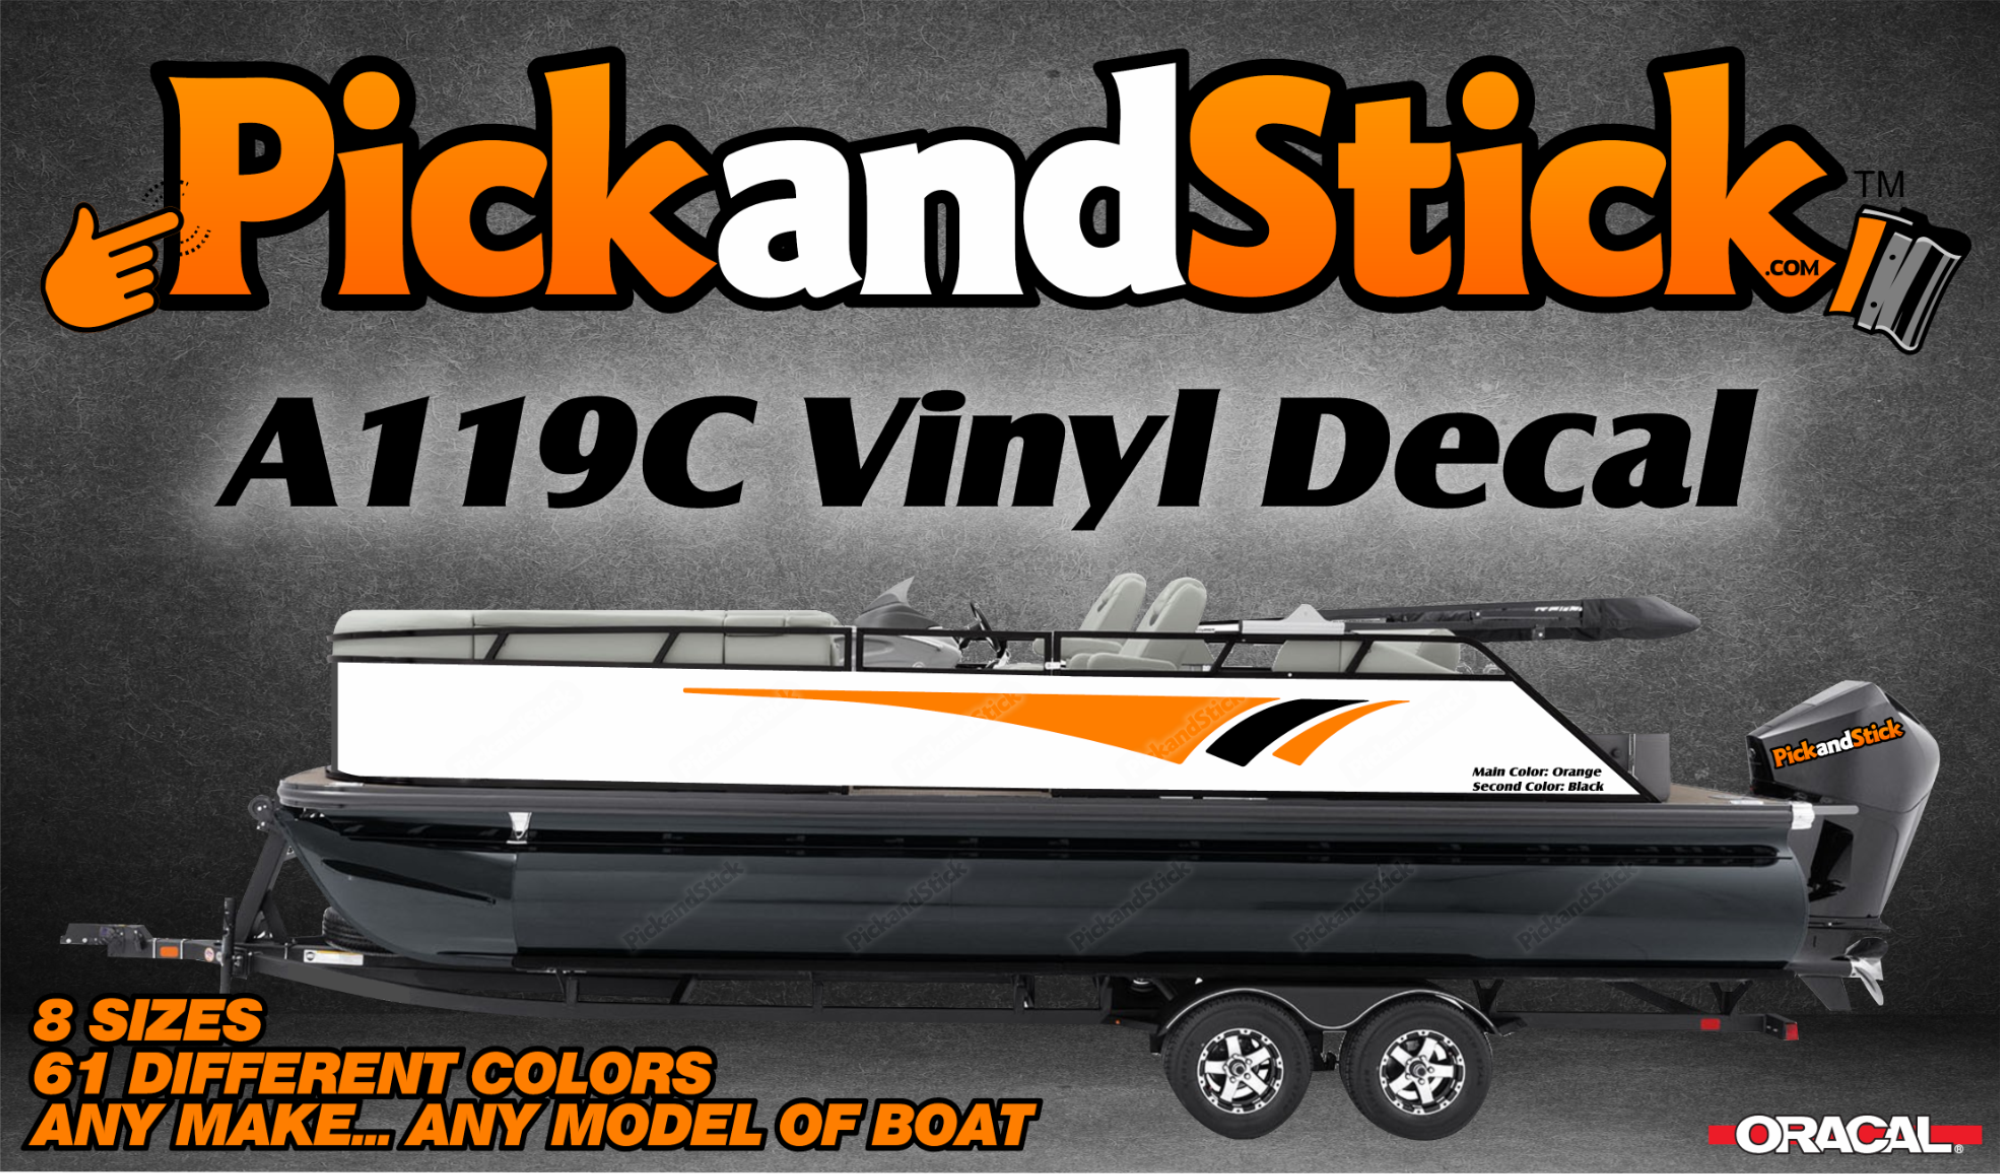 Boat Vinyl Decal A119C - PickandStickcom